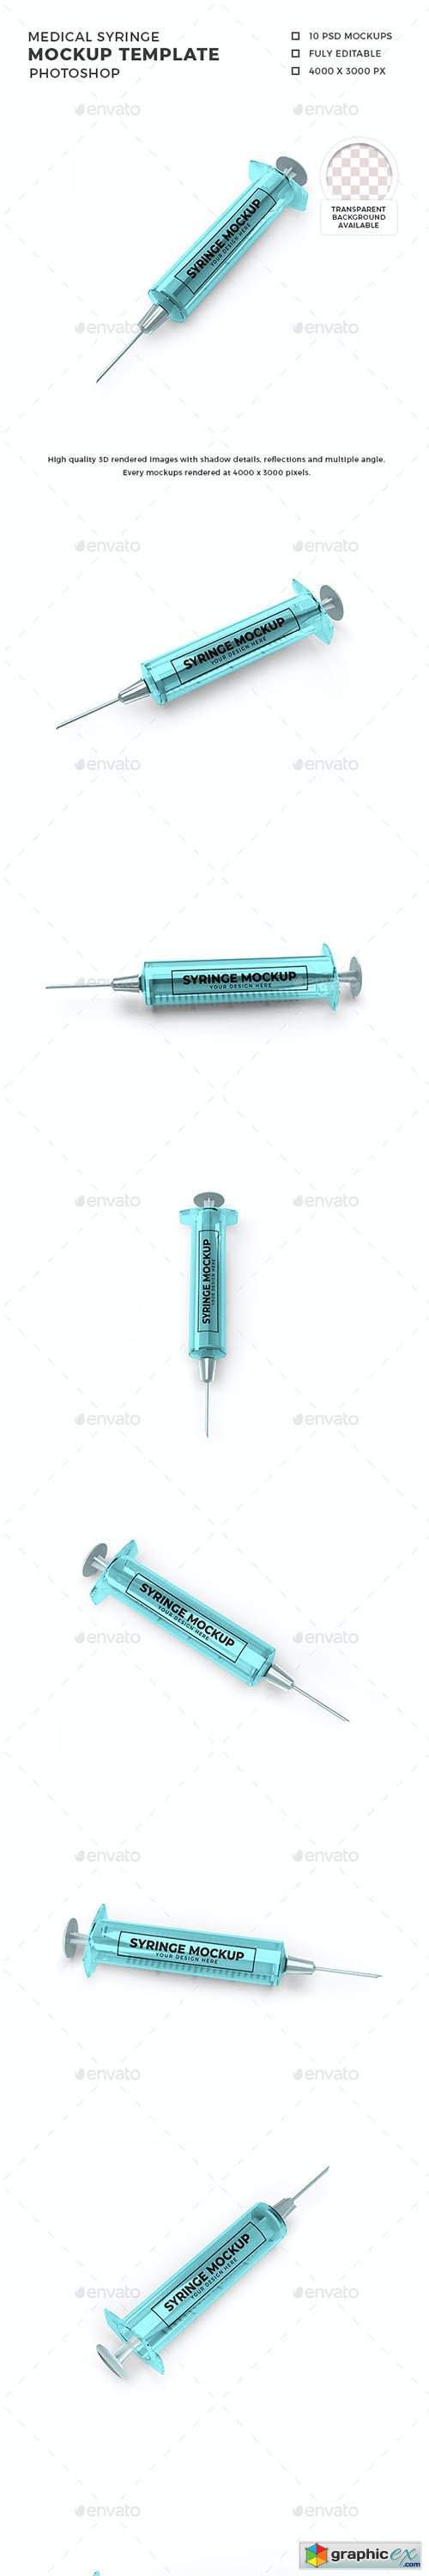 Medical Syringe Mockup Template Set